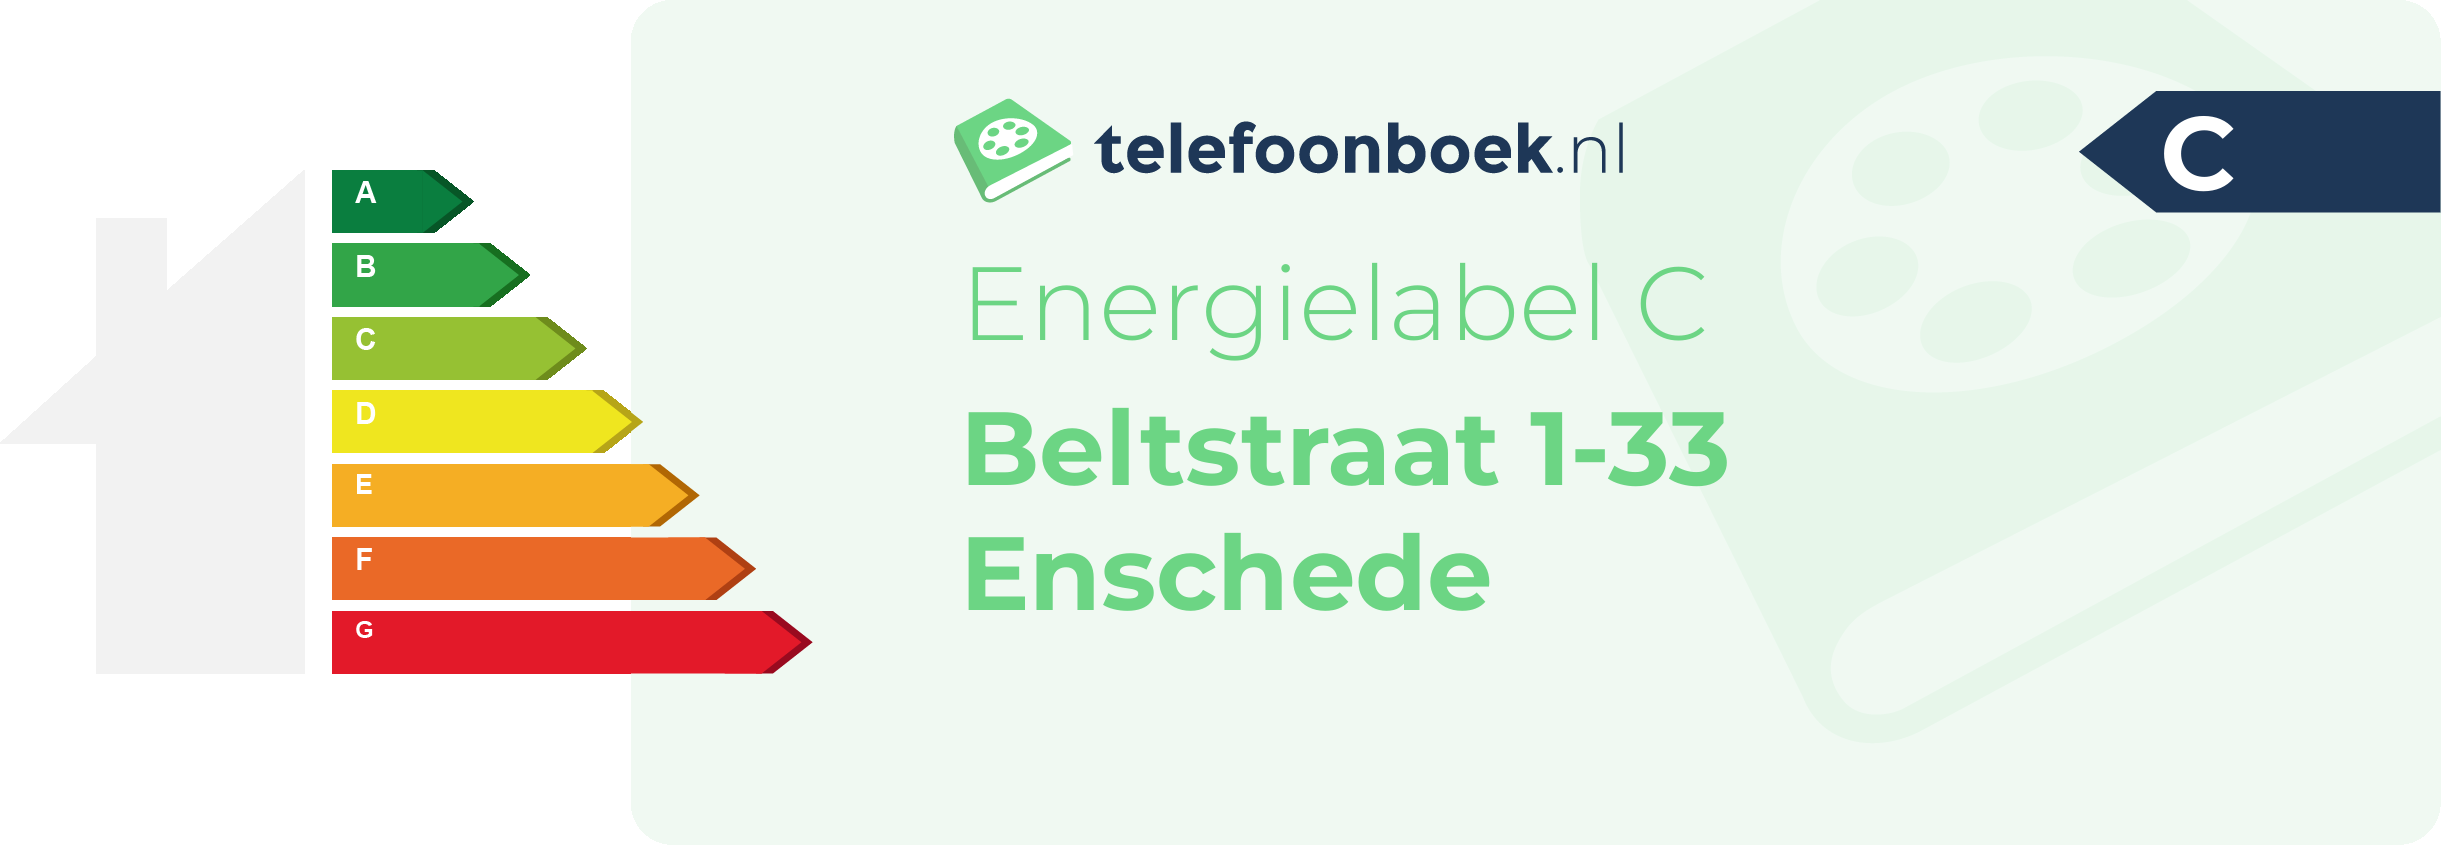 Energielabel Beltstraat 1-33 Enschede